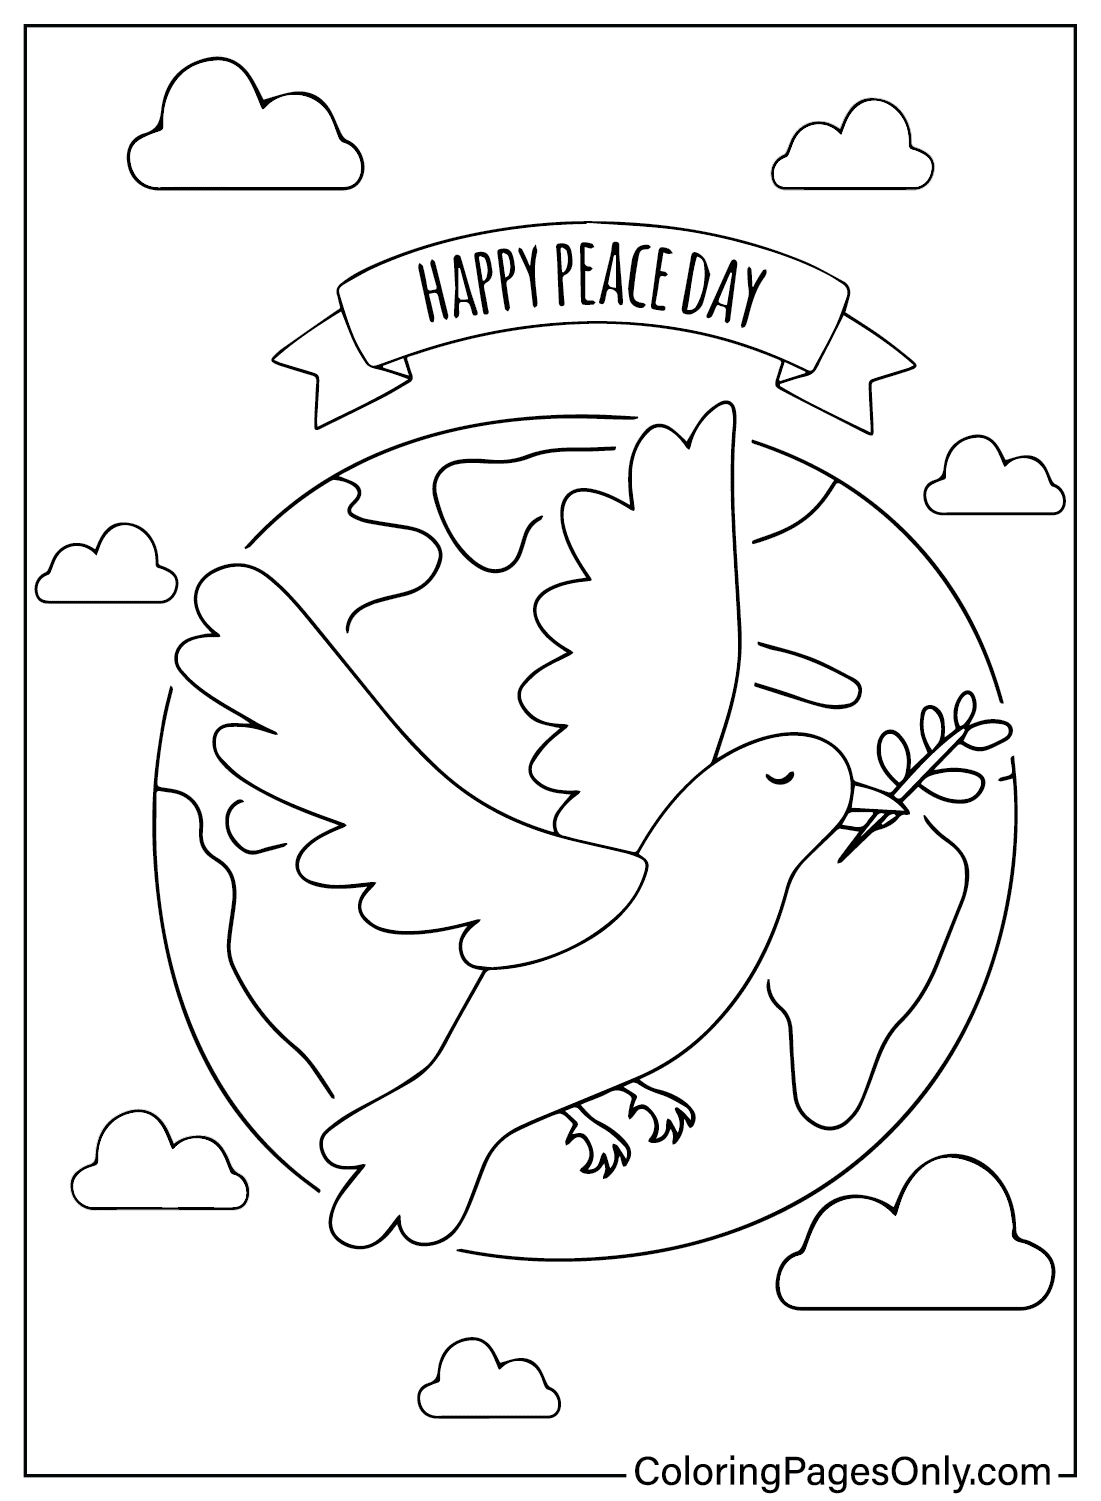 صفحة تلوين يوم سعيد للسلام من اليوم العالمي للسلام